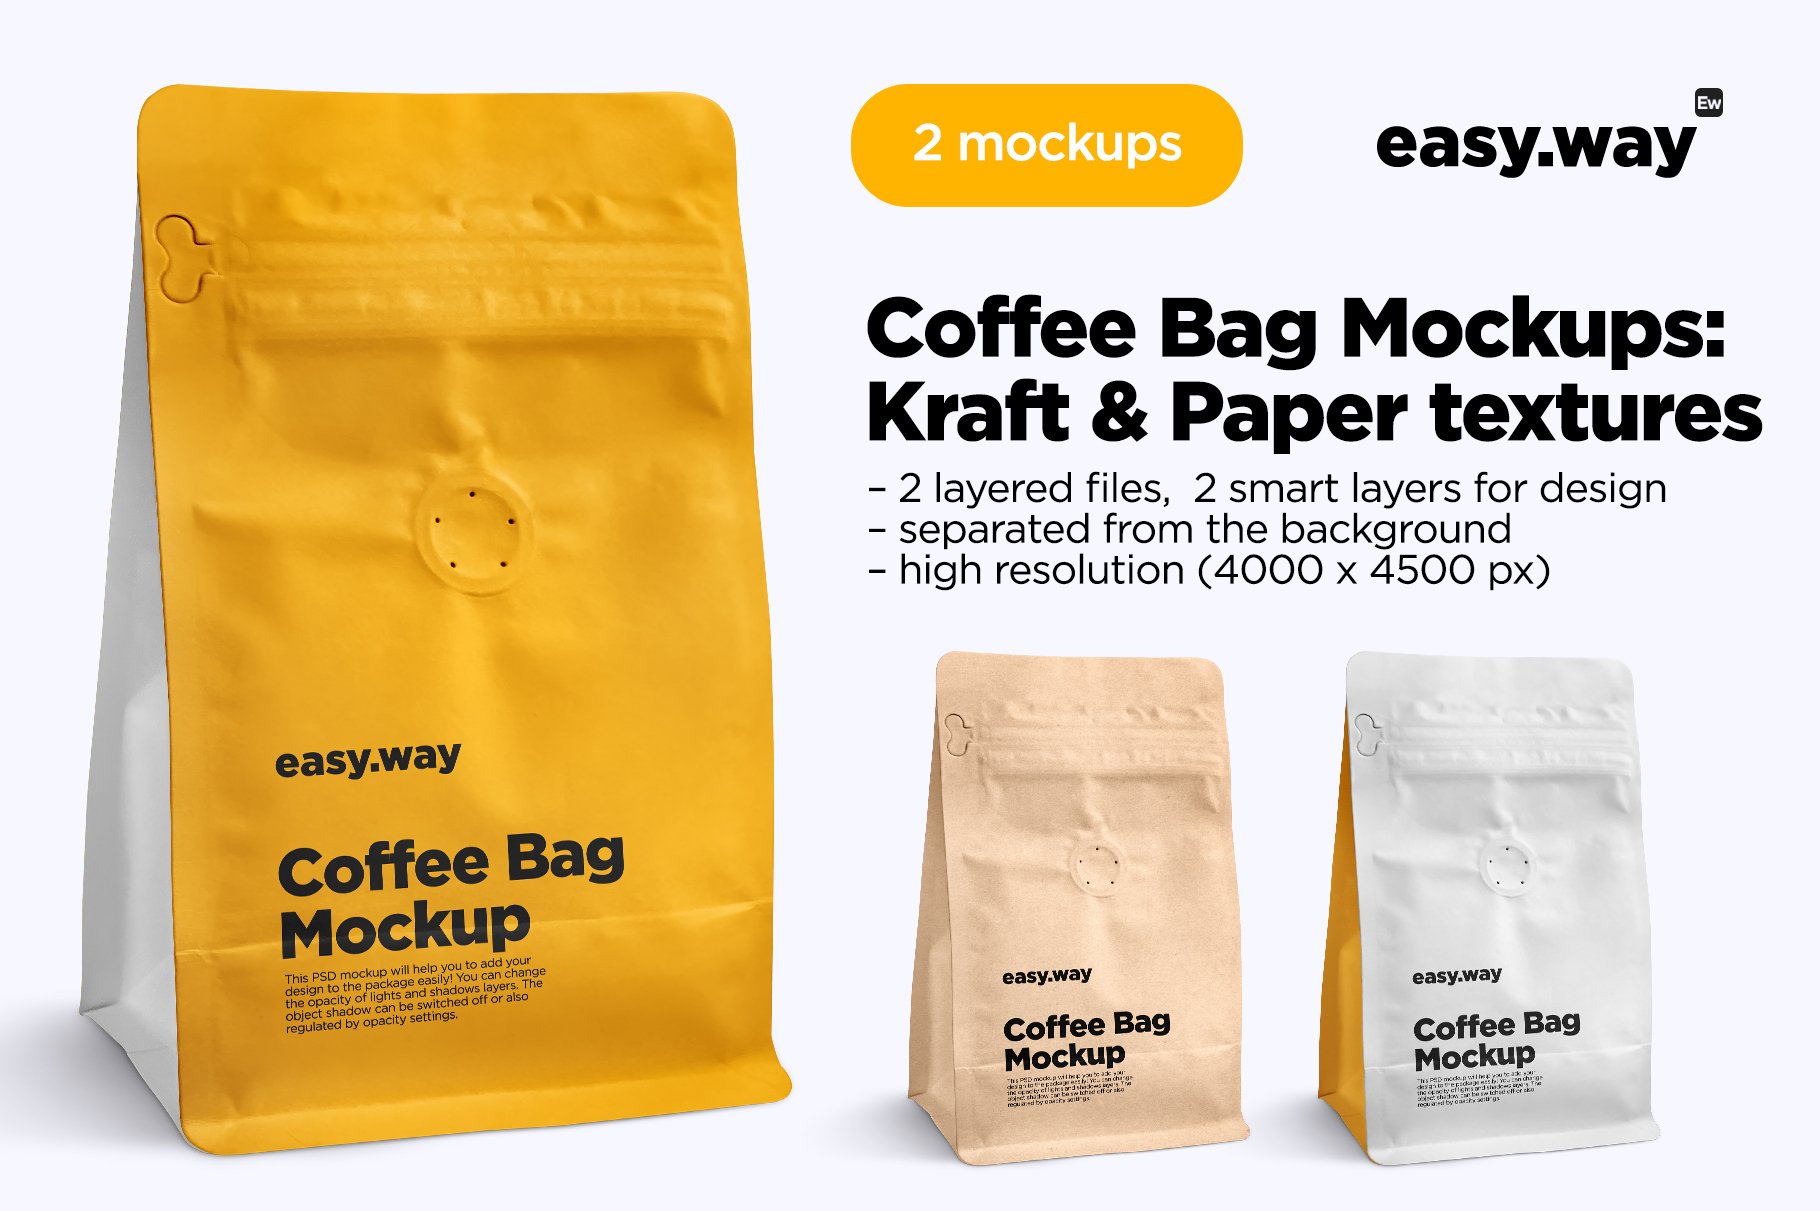 Coffee Bag PSD Mockups cover image.